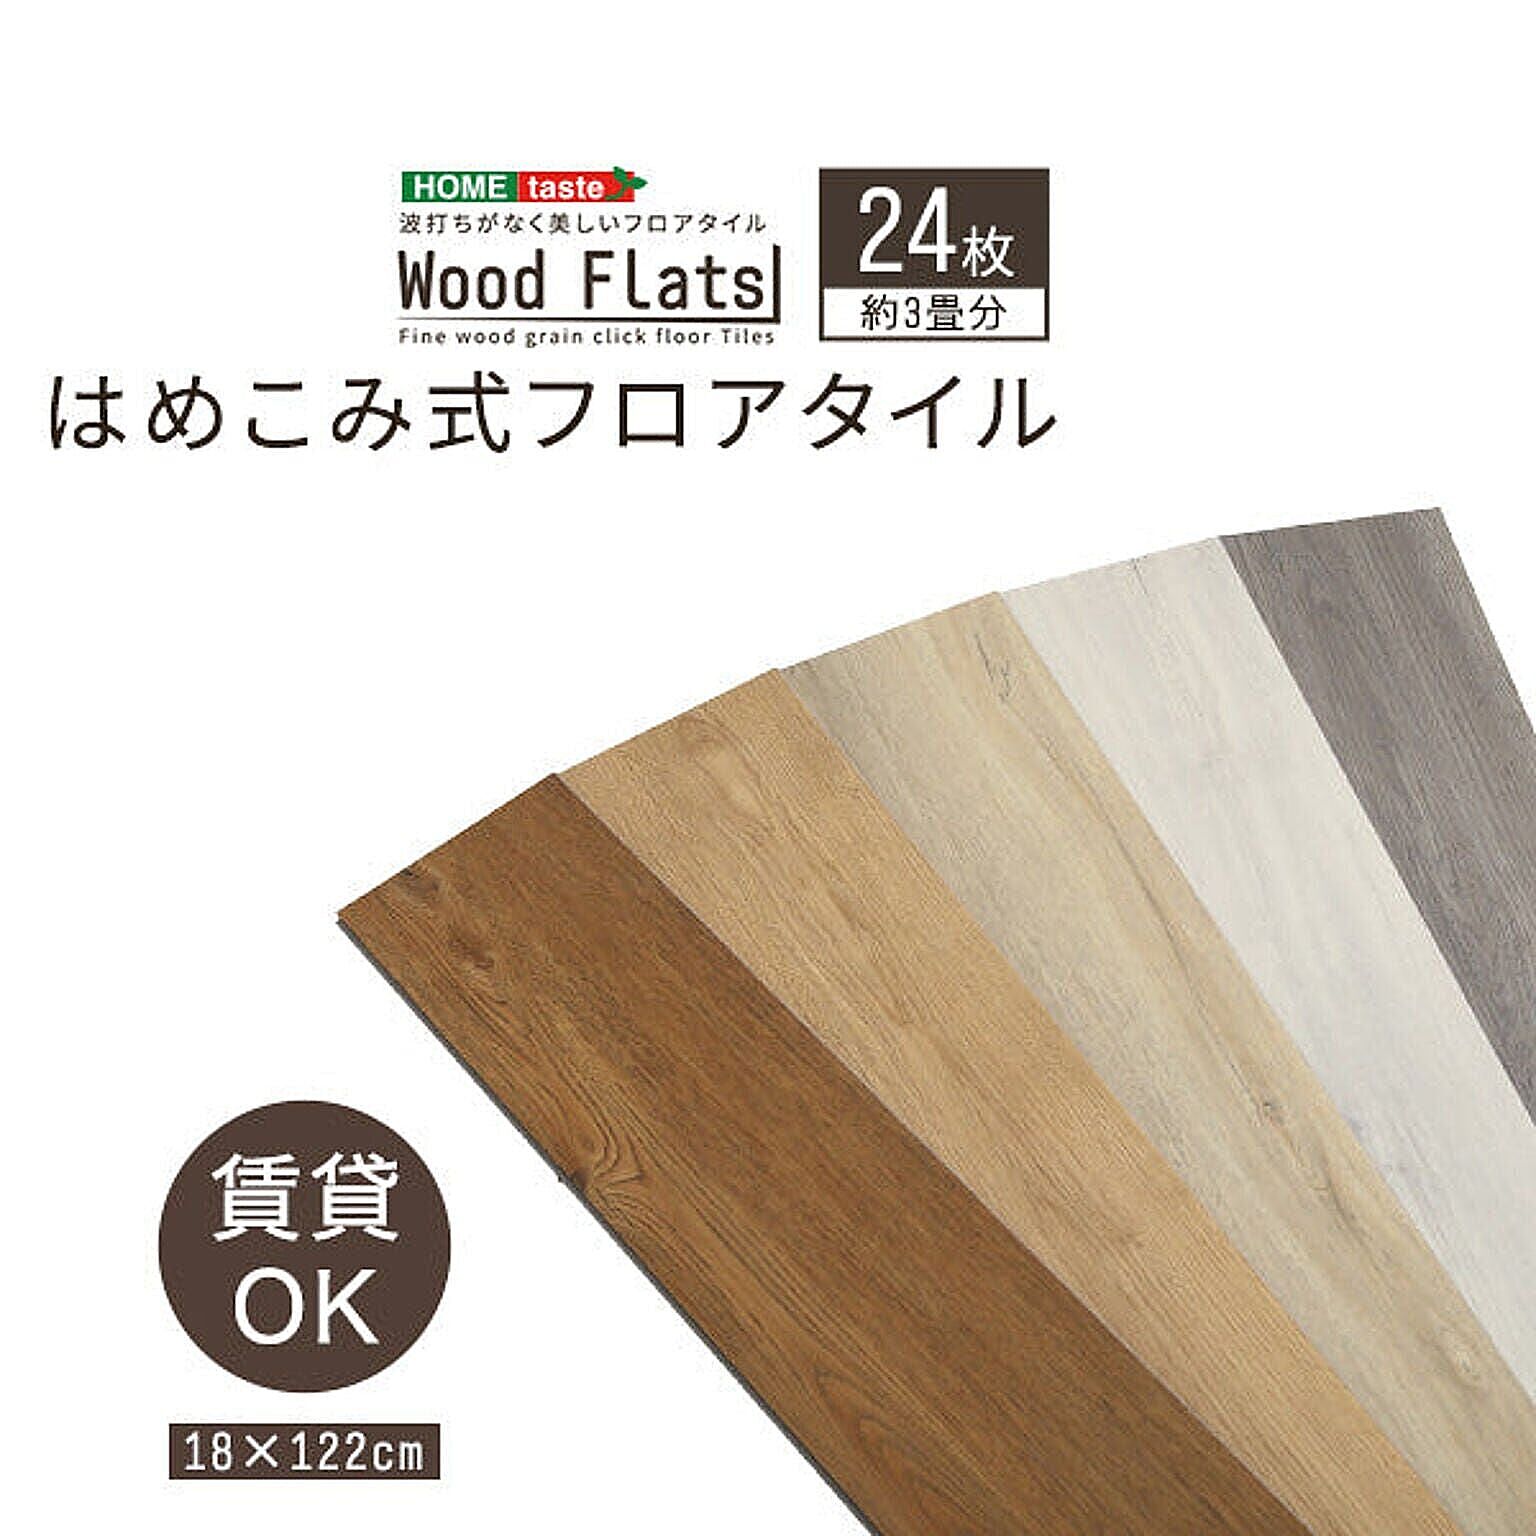 ホームテイスト はめこみ式フロアタイル 24枚セット【Wood Flats-ウッドフラッツ-】 通販 RoomClipショッピング